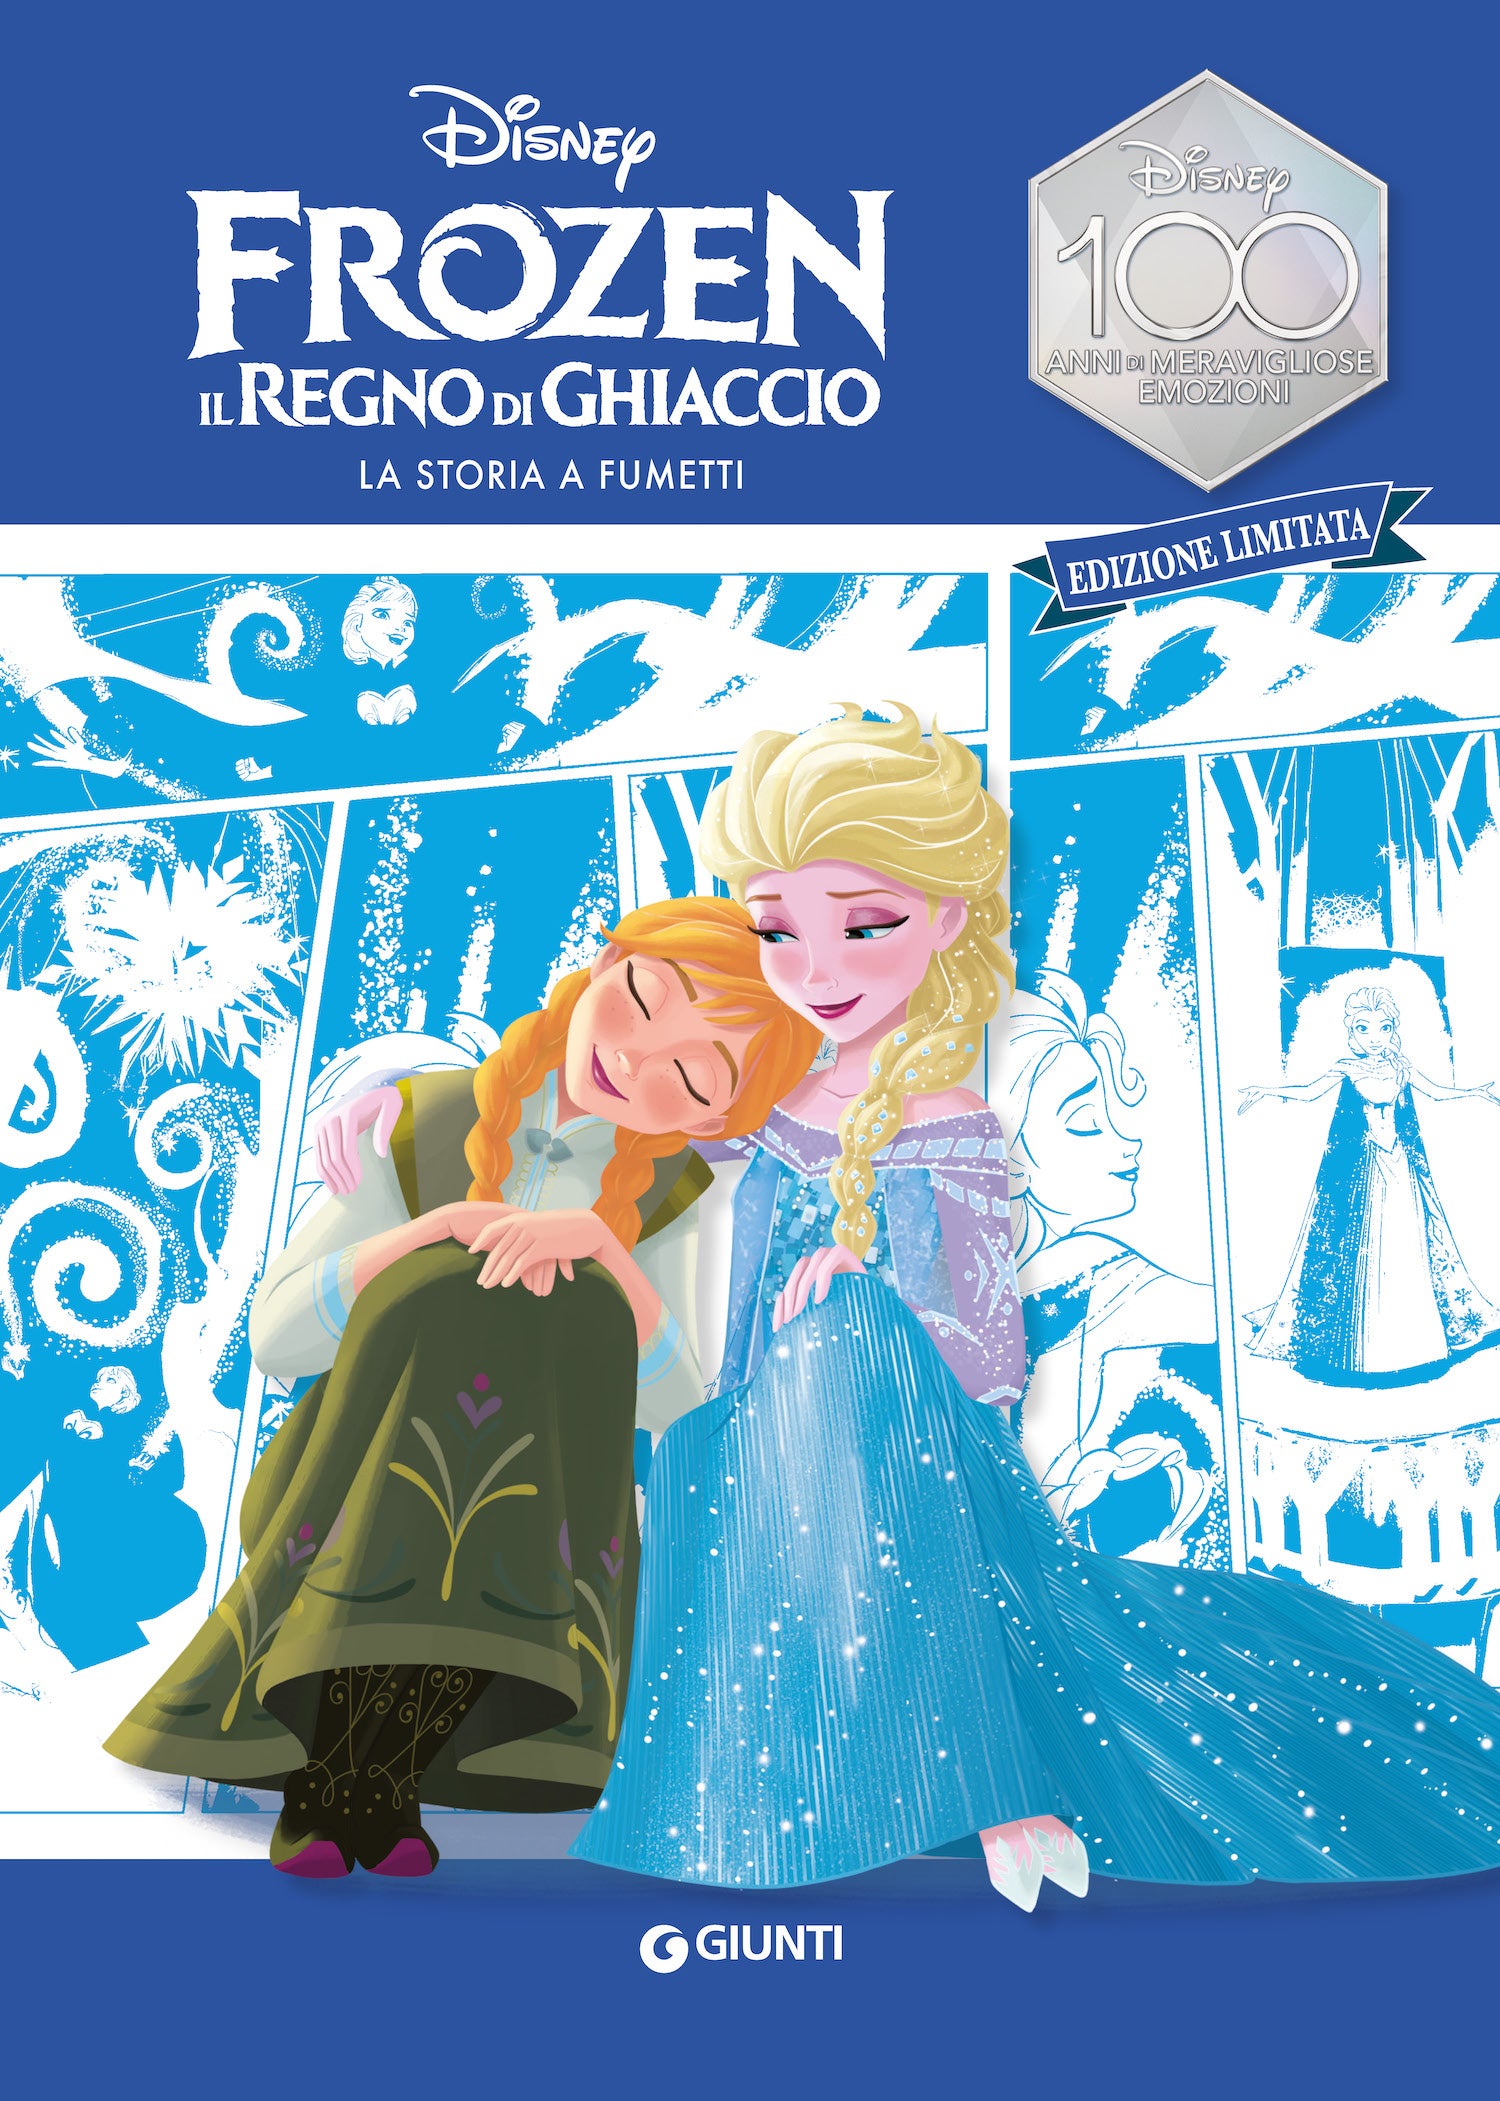 Frozen La storia a fumetti Edizione limitata, Walt Disney